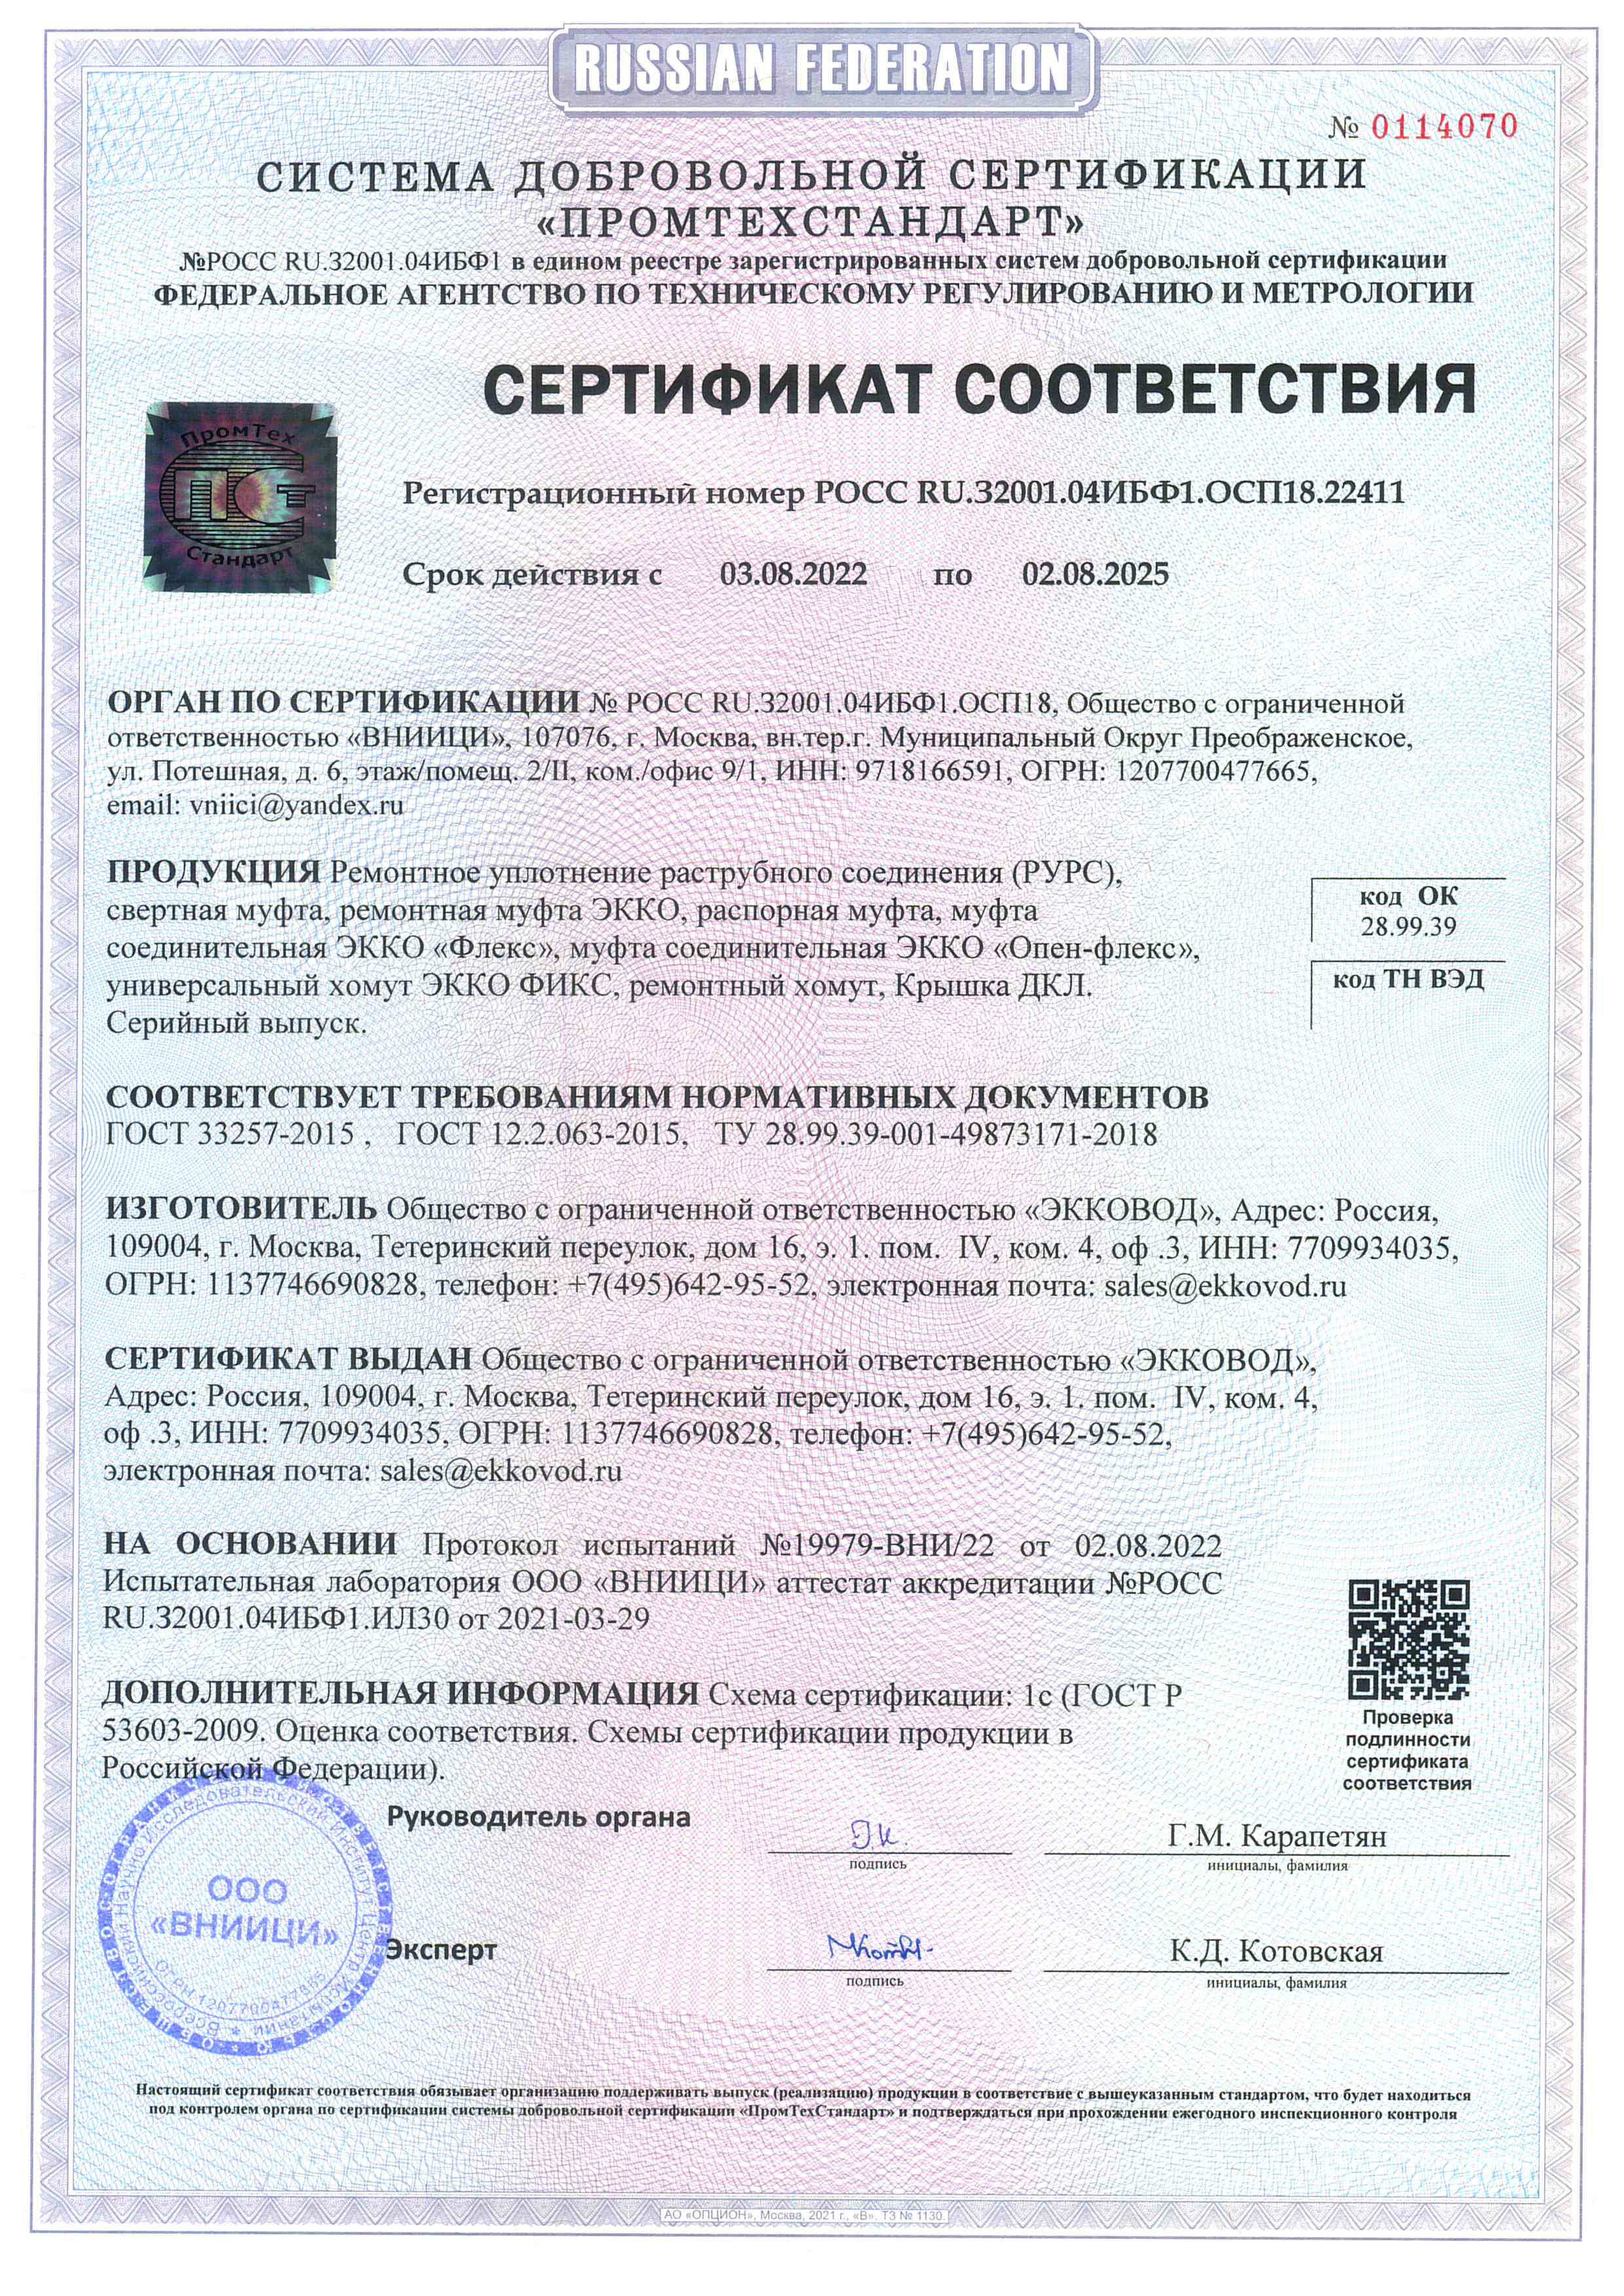 Сертификат соответсвия на РУРС, муфты, хомуты и крышки ДКЛ